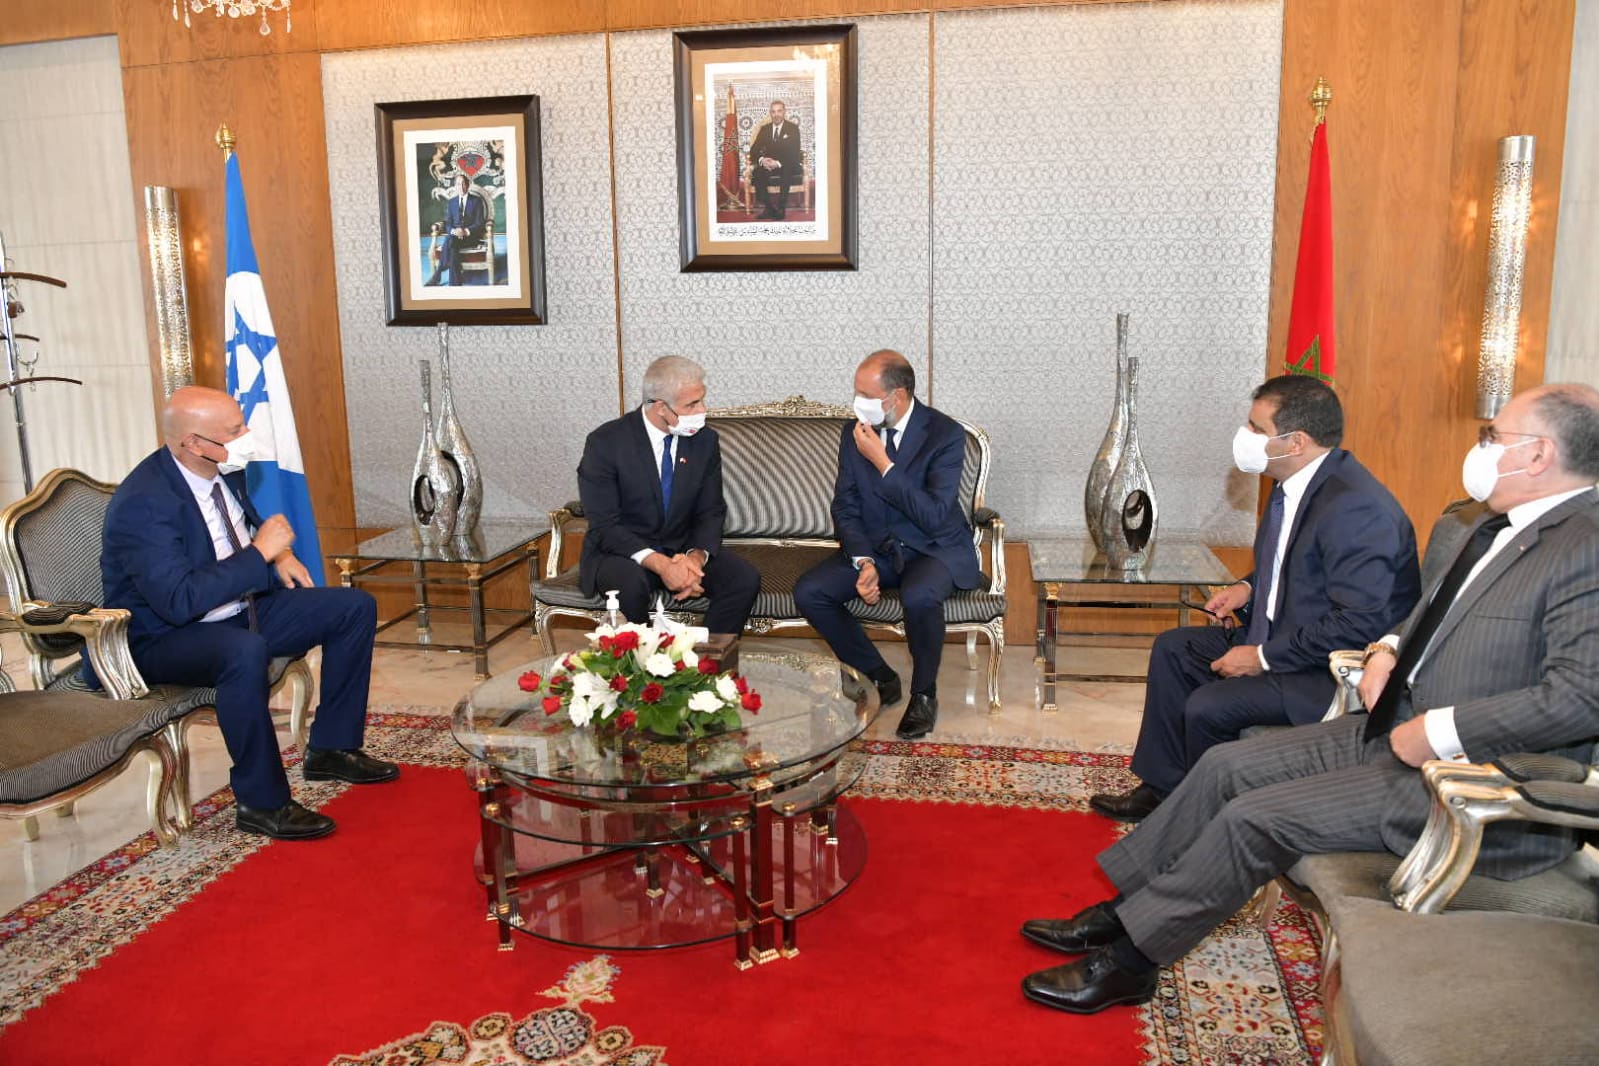 وزير خارجية إسرائيل يائير لبيد يصل الى المغرب